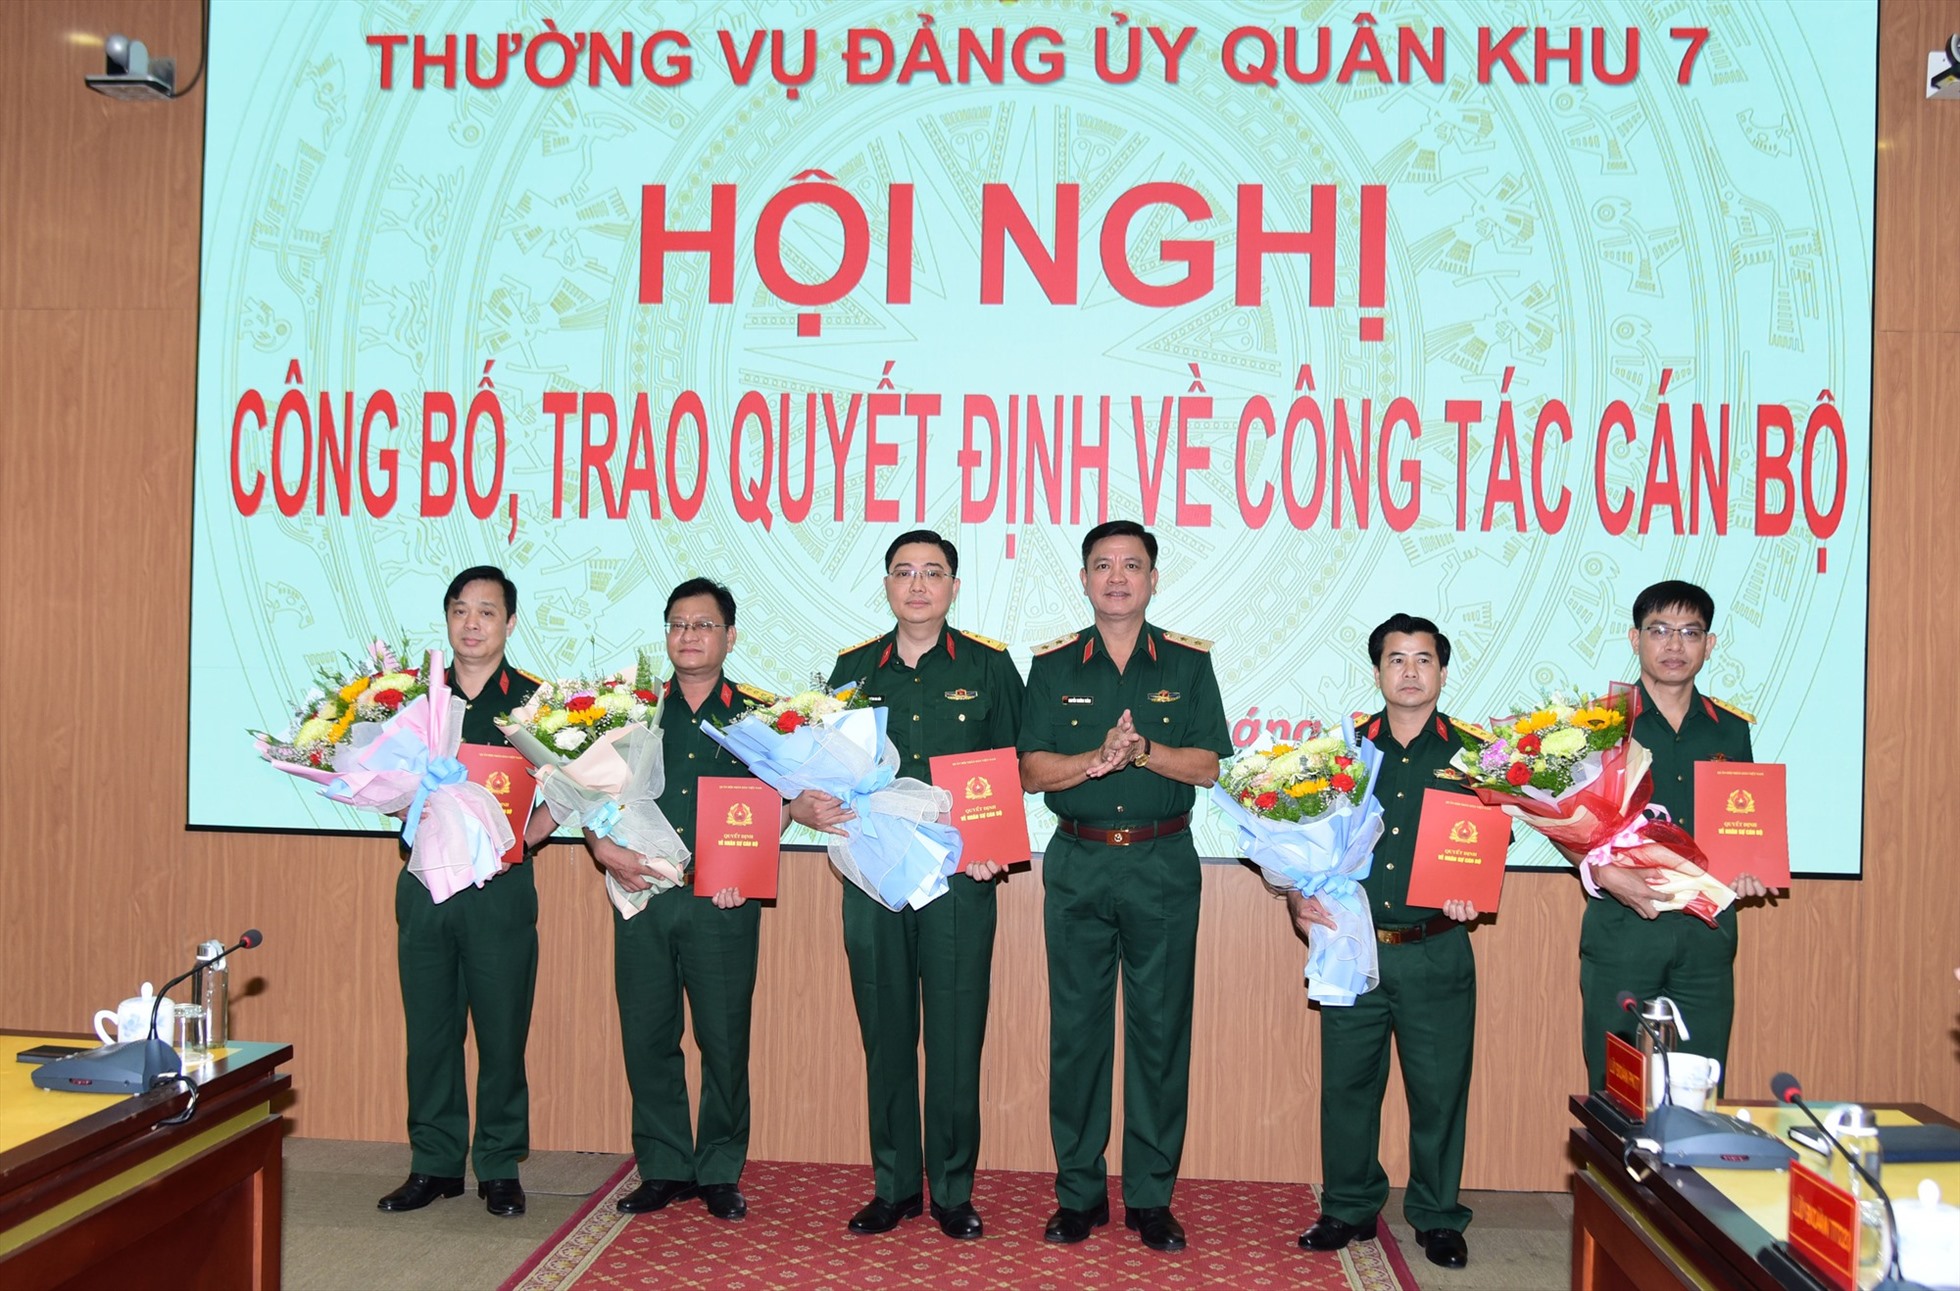 Trung tướng Nguyễn Trường Thắng, Ủy viên Trung ương Đảng, Tư lệnh Quân khu 7 trao các quyết định cho cán bộ